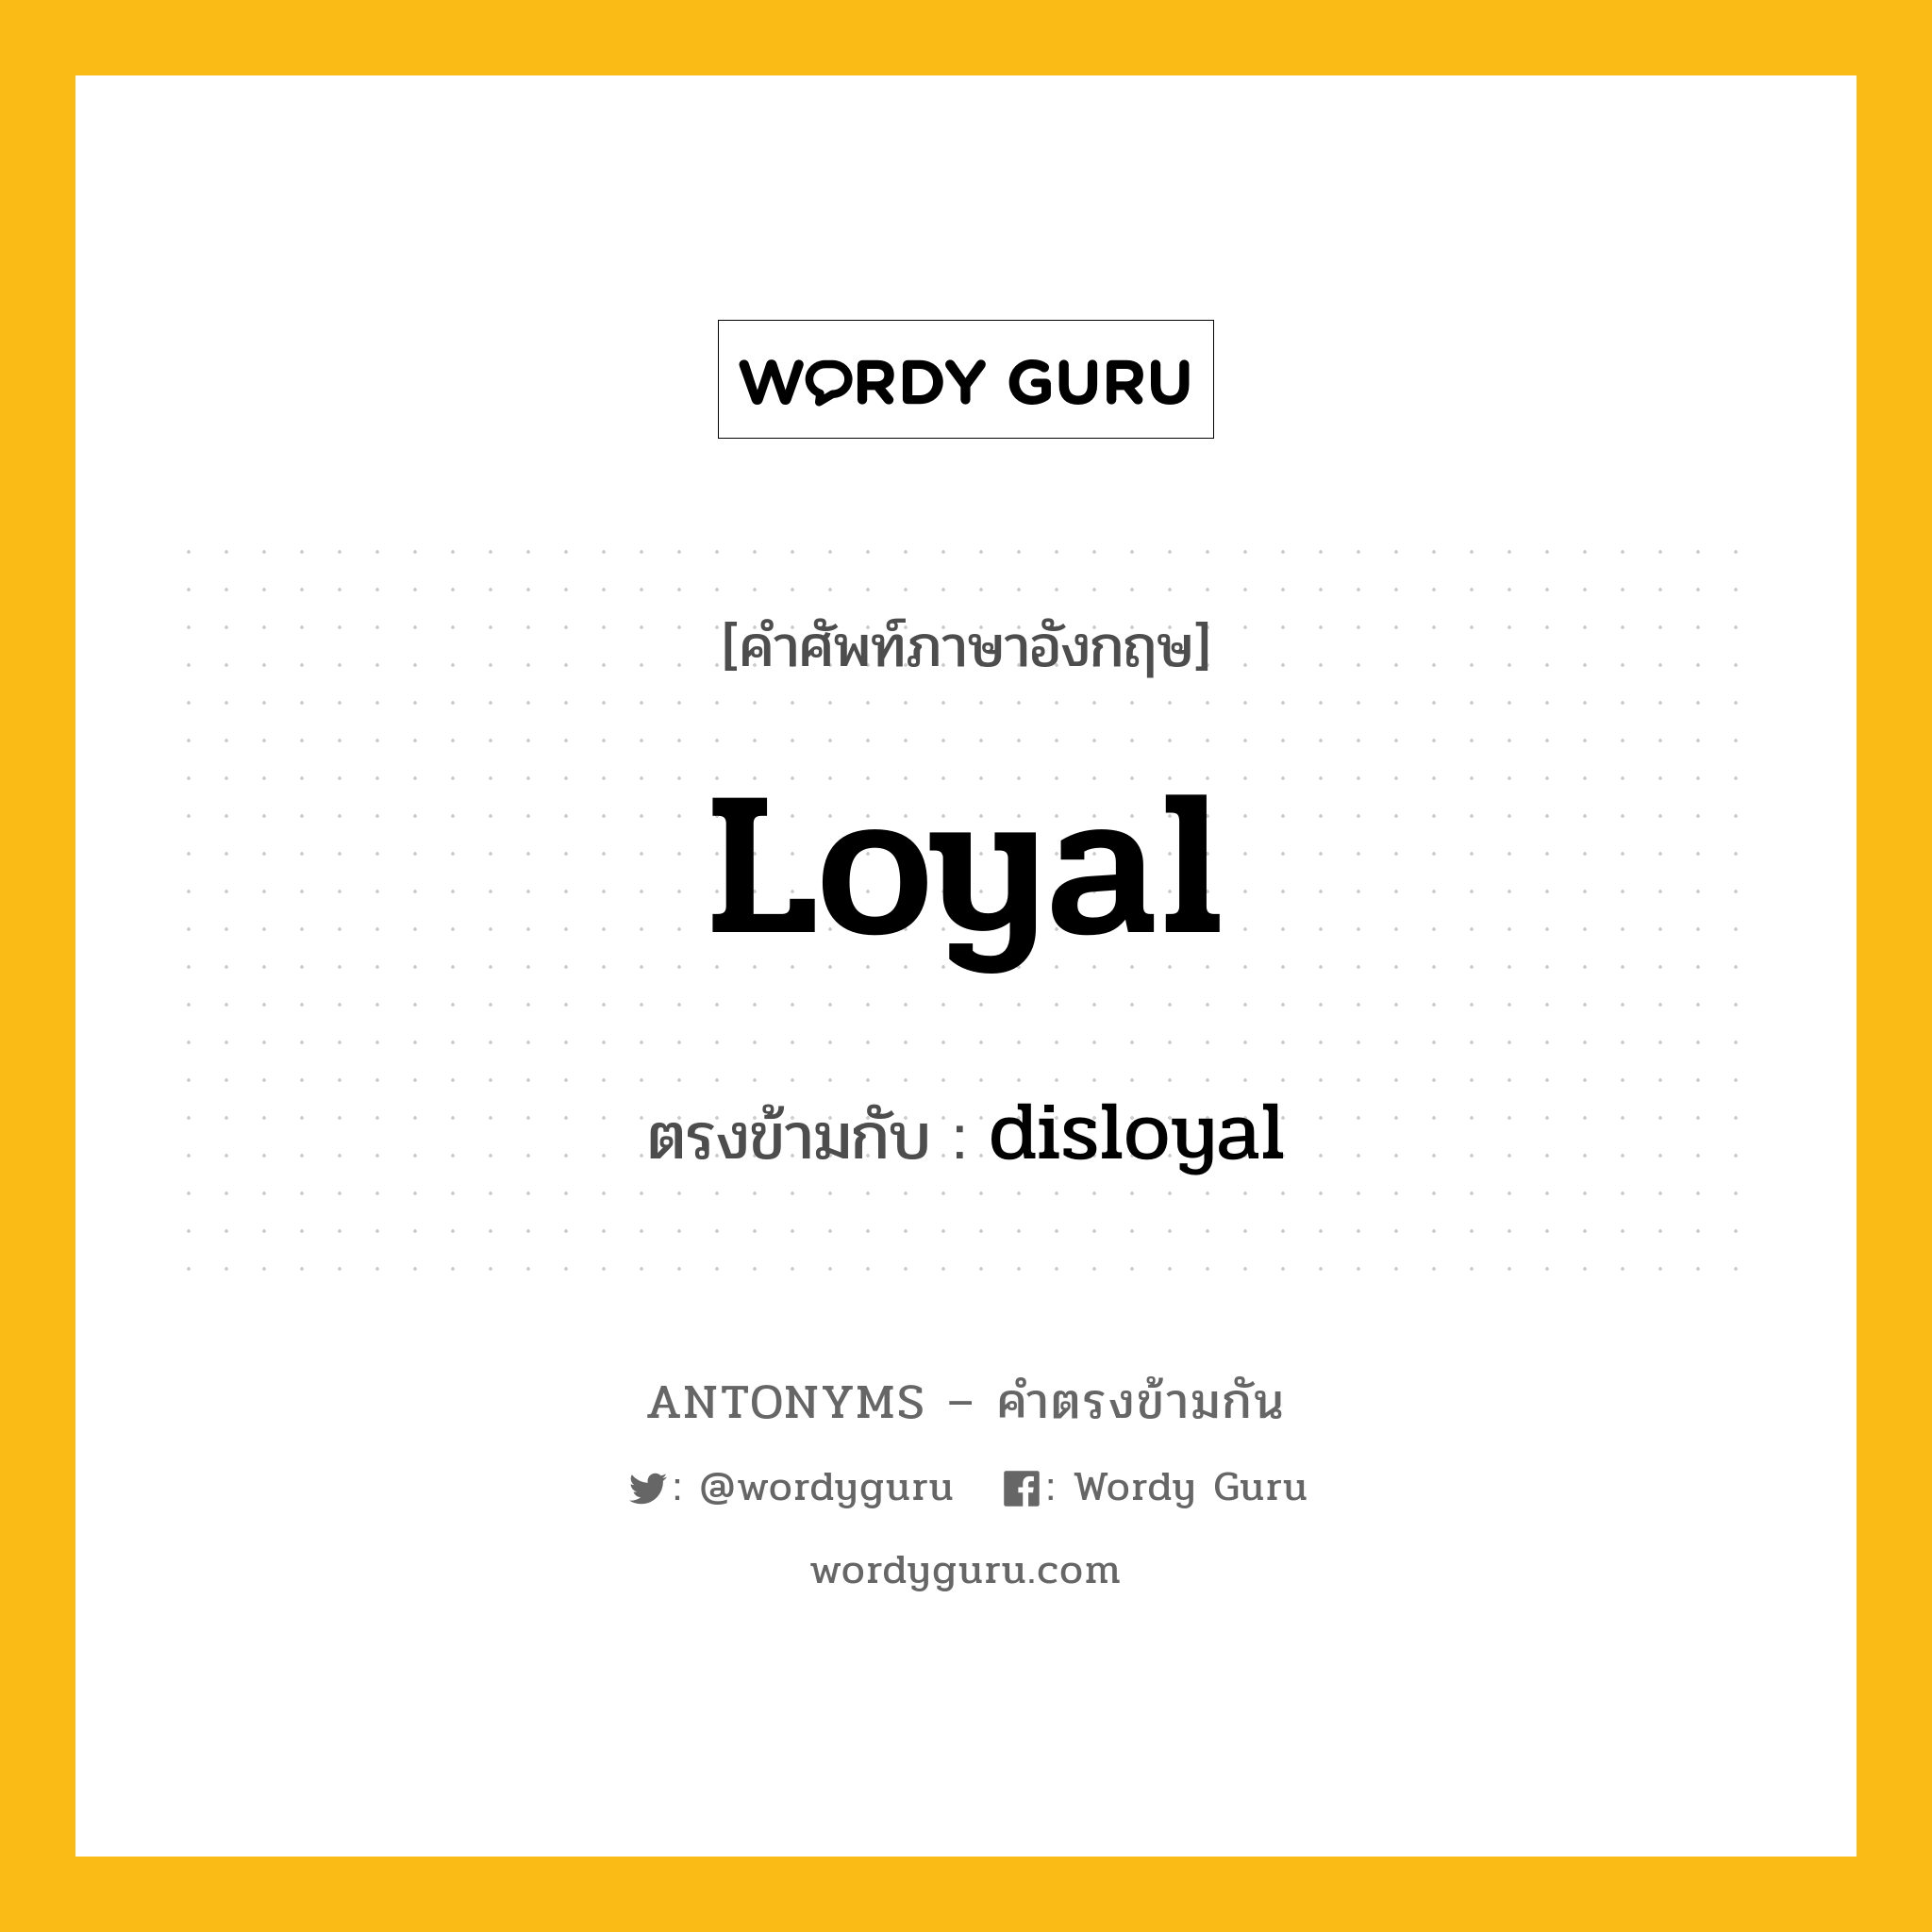 loyal เป็นคำตรงข้ามกับคำไหนบ้าง?, คำศัพท์ภาษาอังกฤษ loyal ตรงข้ามกับ disloyal หมวด disloyal